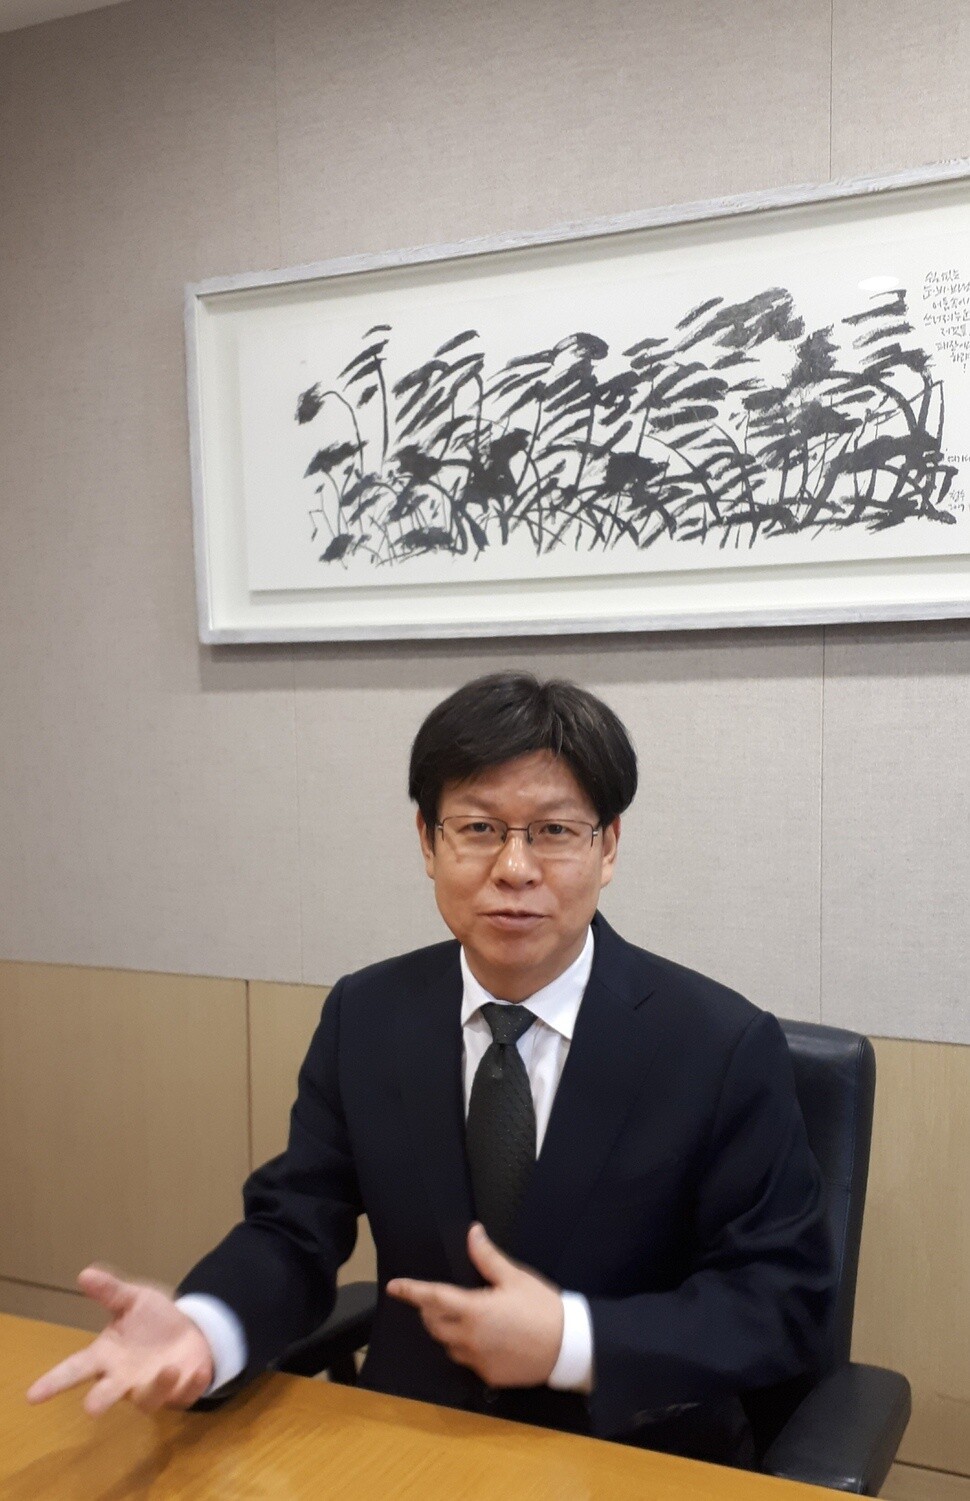 Attorney Kim Gwang-gil